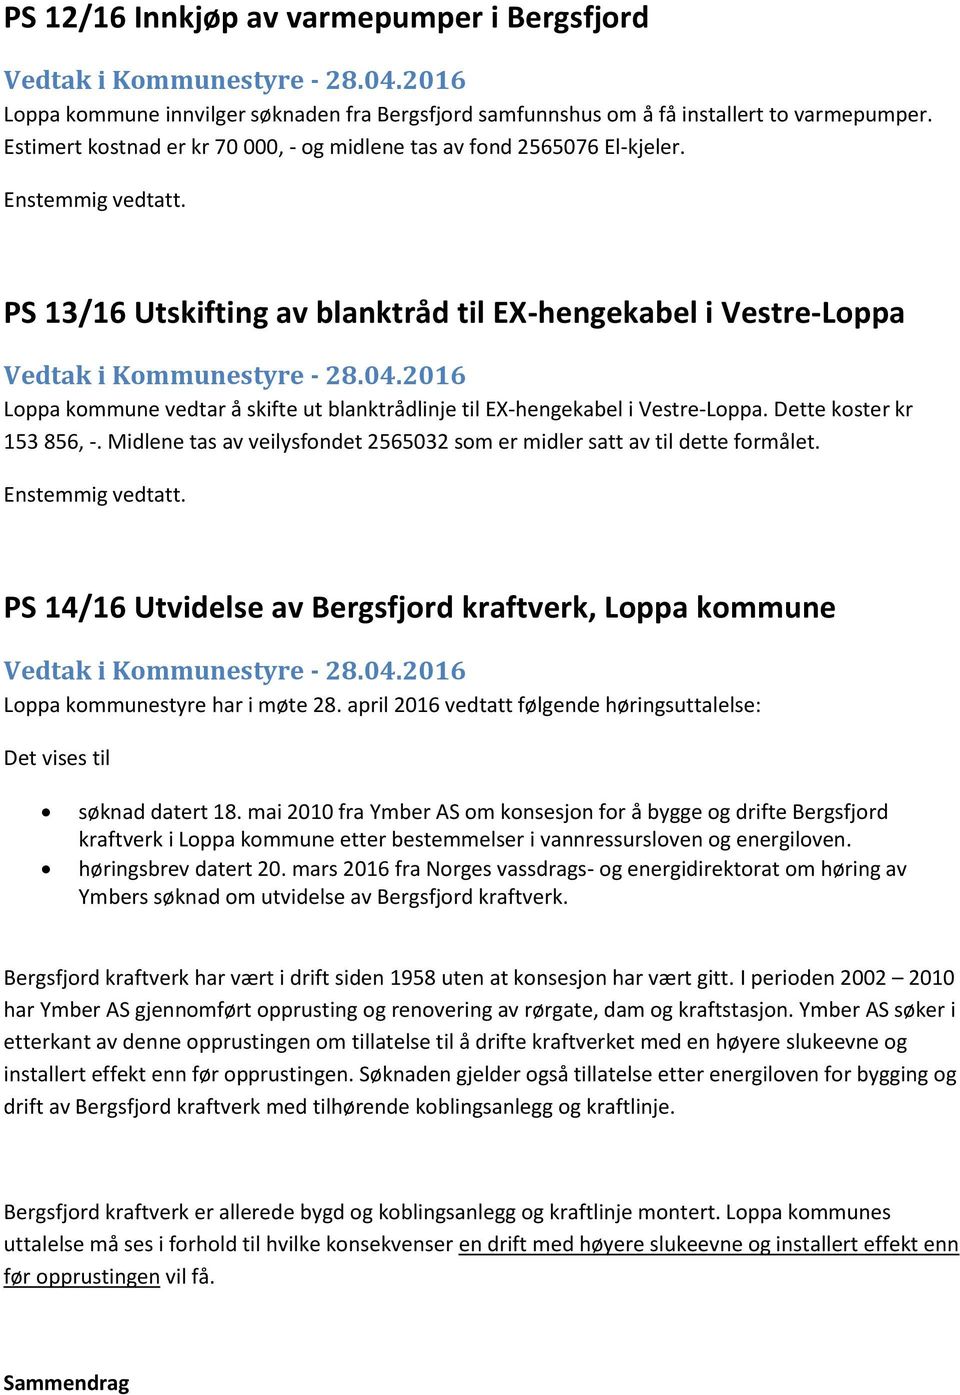 PS 13/16 Utskifting av blanktråd til EX-hengekabel i Vestre-Loppa Loppa kommune vedtar å skifte ut blanktrådlinje til EX-hengekabel i Vestre-Loppa. Dette koster kr 153 856, -.